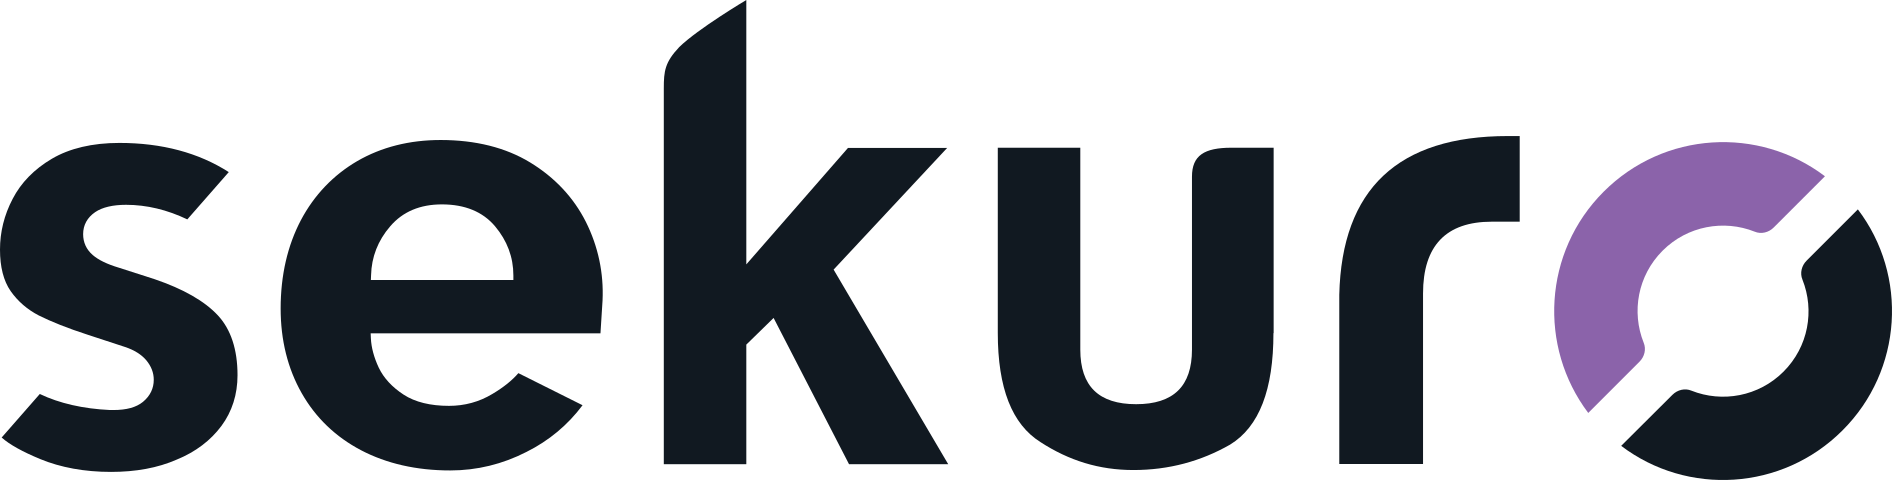 Sekuro logo